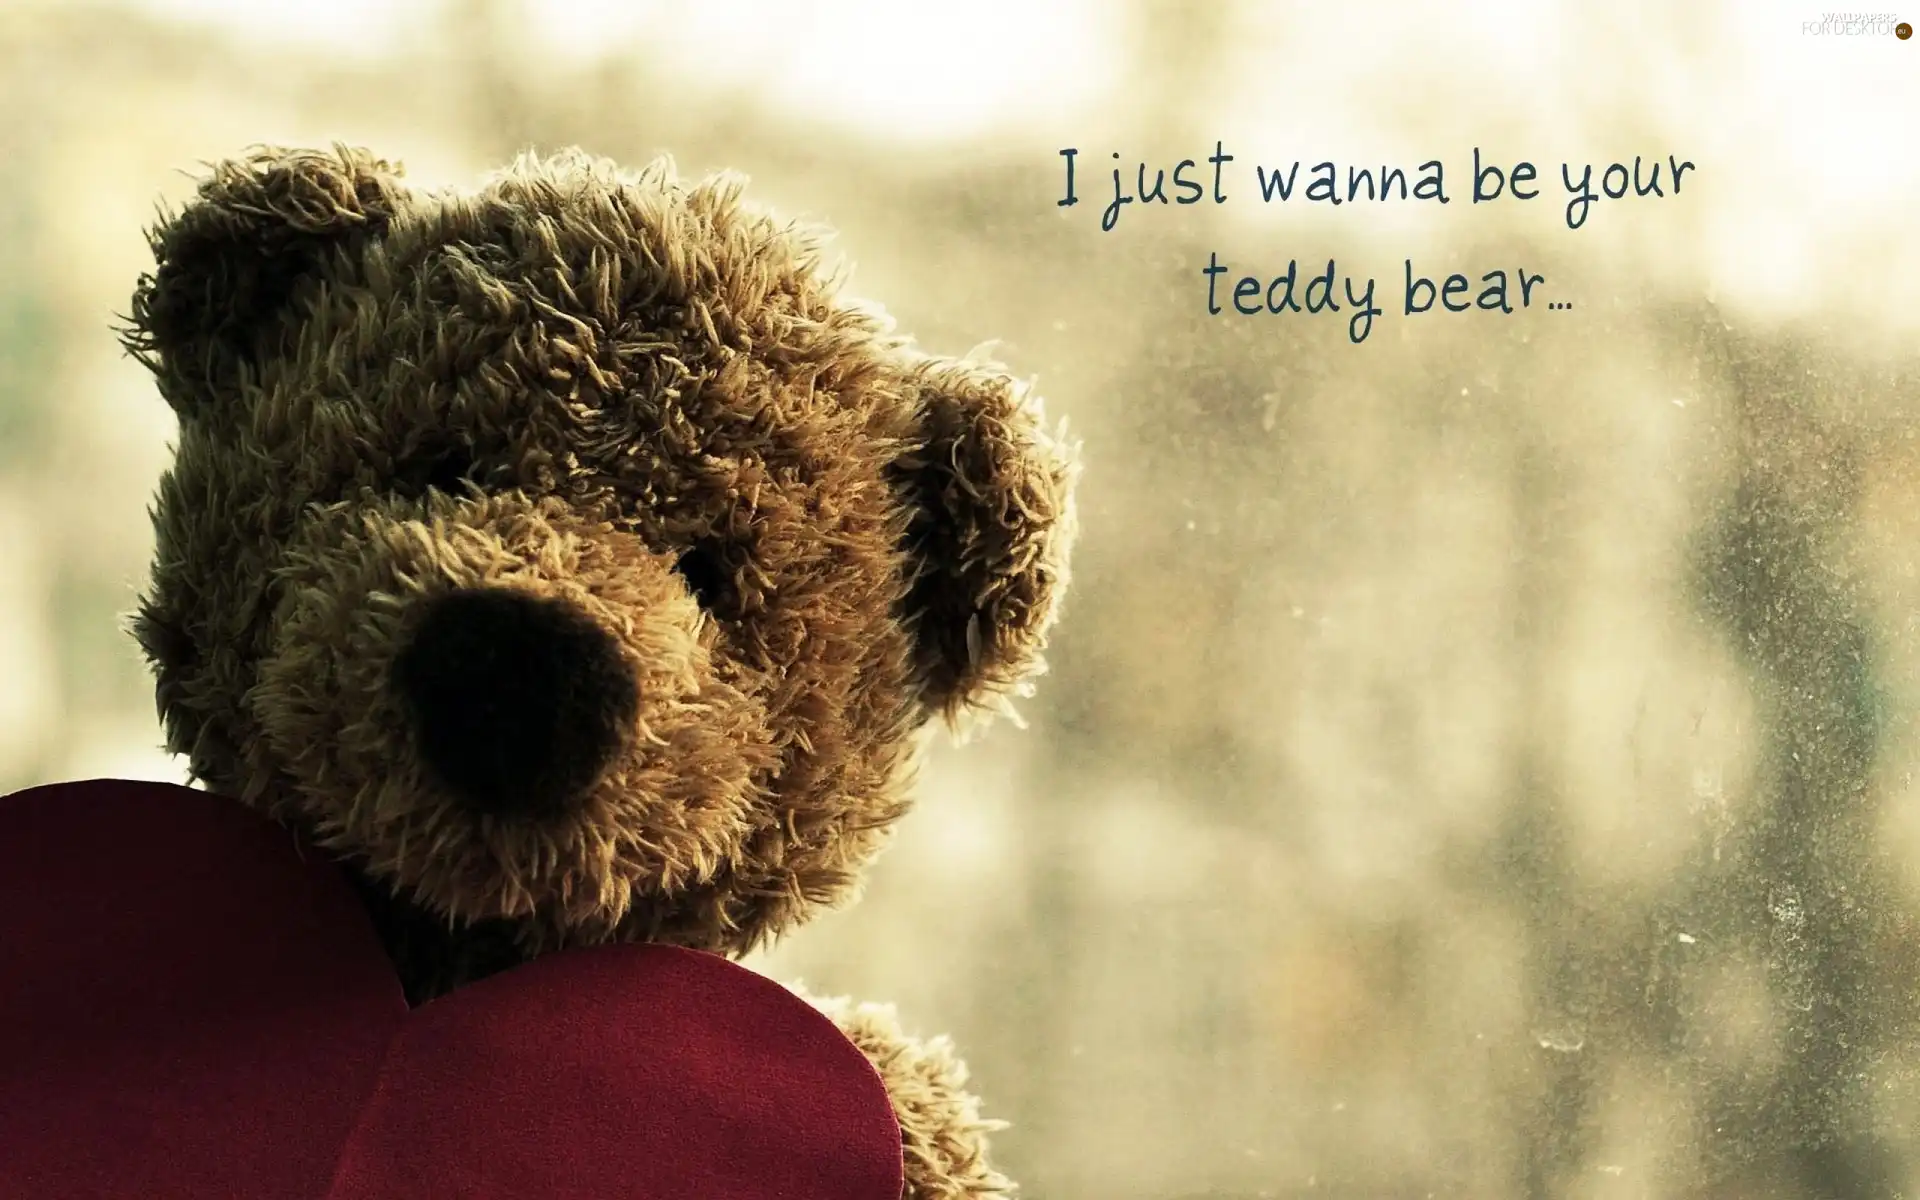 Heart, Plush, teddy bear, text